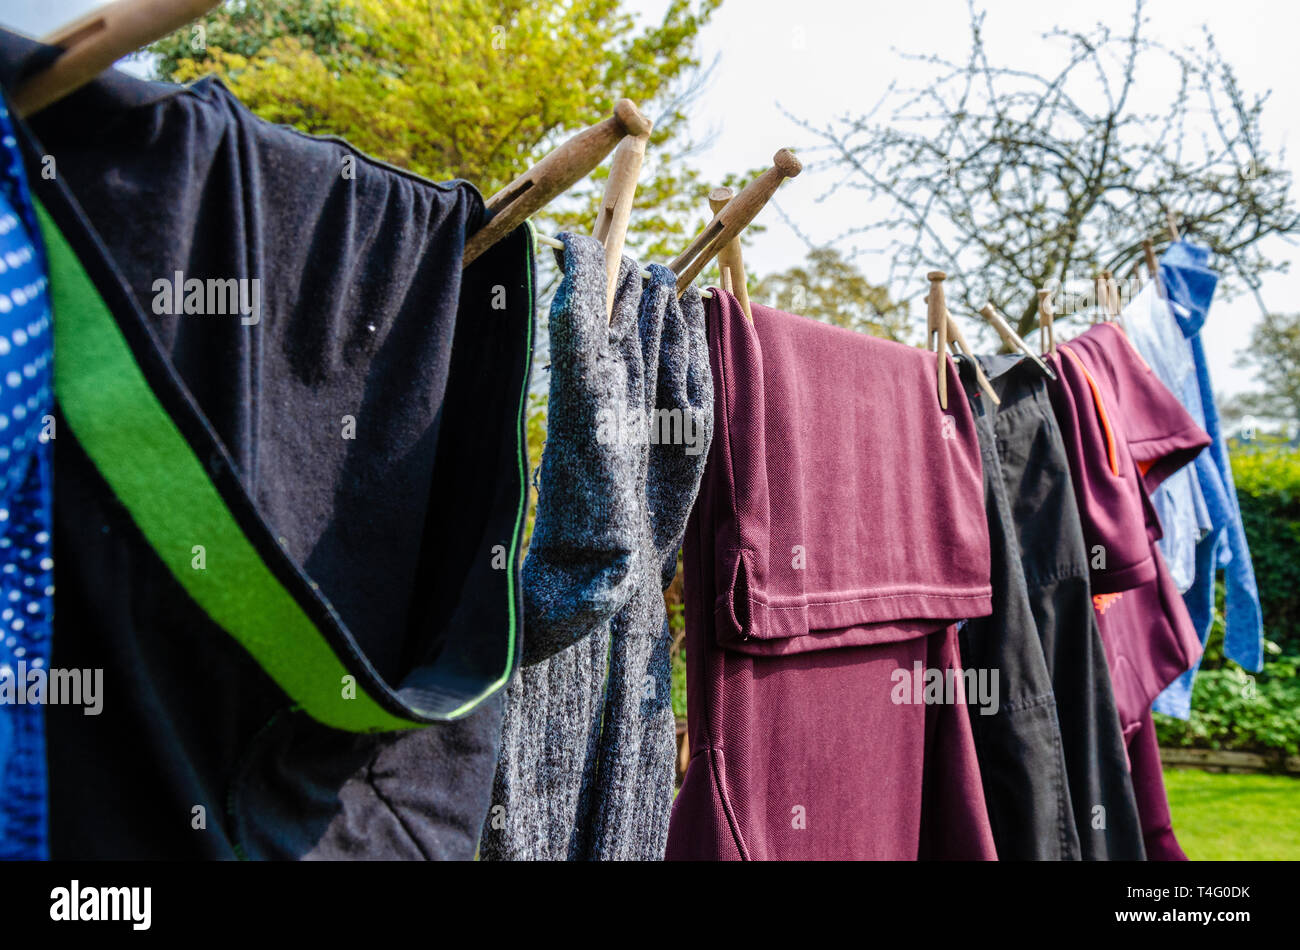 Waschmaschine außen Trocknen auf der Wäscheleine. Kleidung trocknen schnell in das Wetter im Frühling. Stockfoto